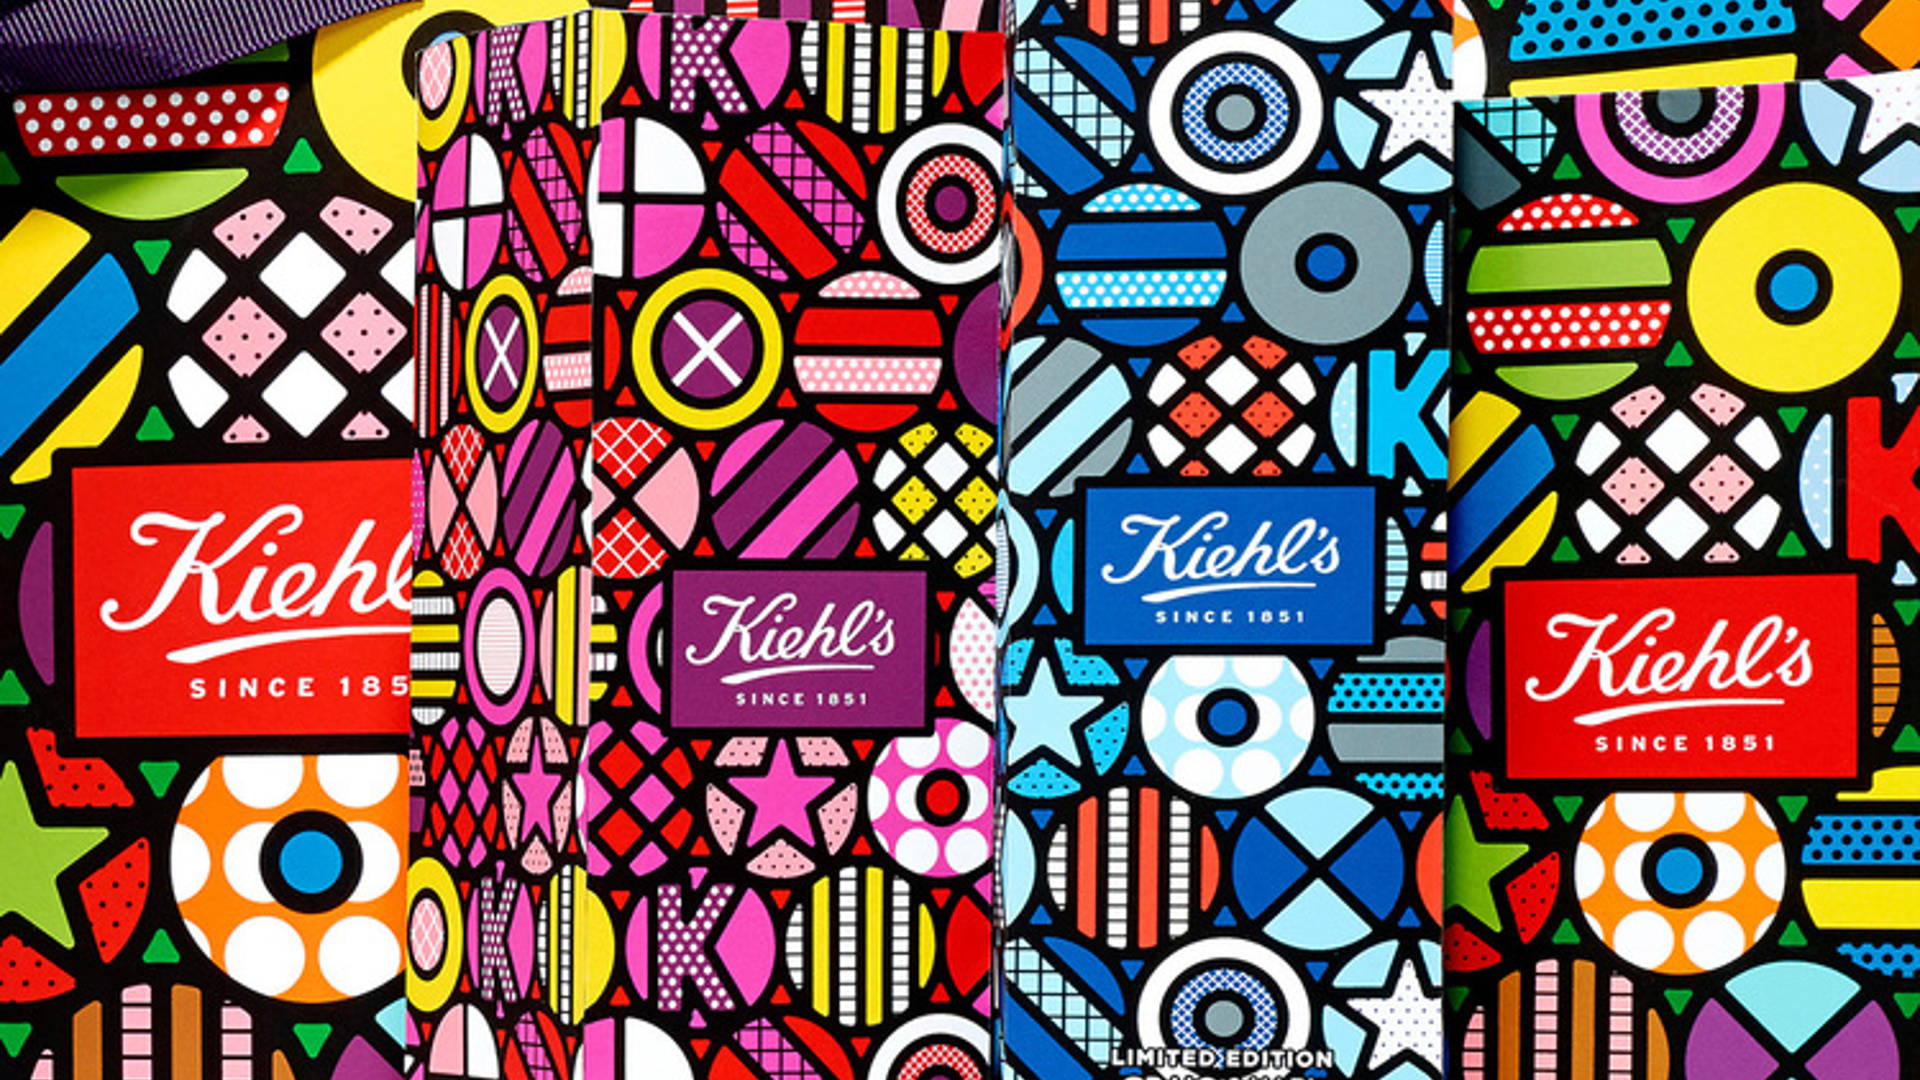 Kiehl's x Craig & Karl Collaboration | Dieline - Design, Branding &  Packaging Inspiration